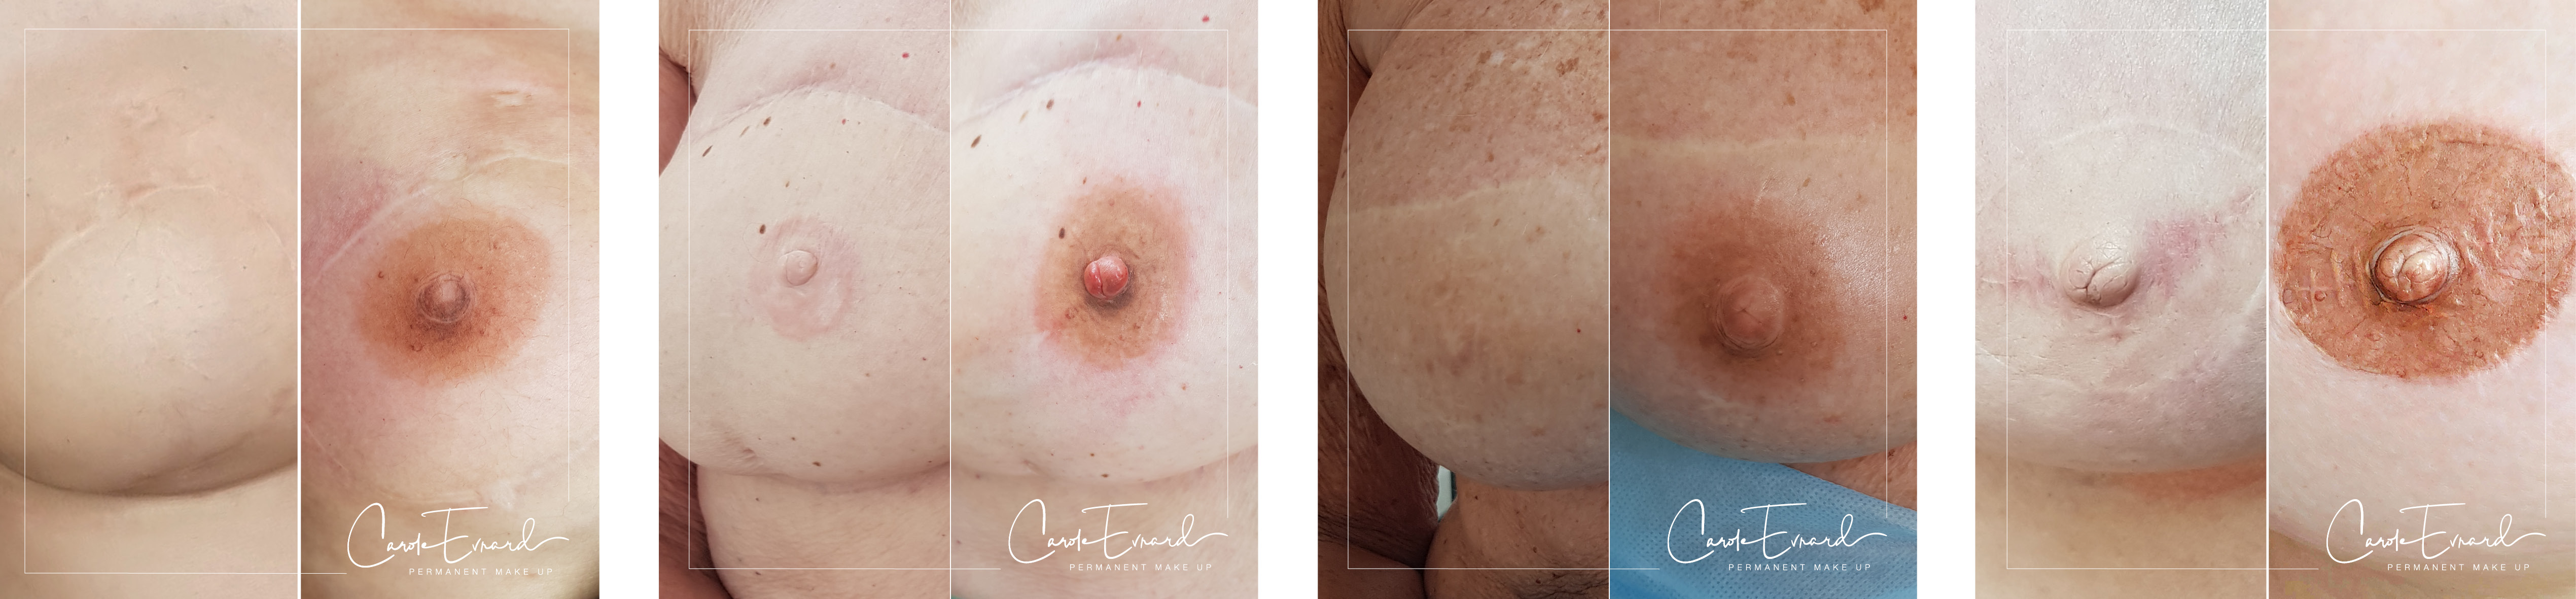 Reconstruction d'aréole mammaire par dermopigmentation - Carole Evrard, Medico Derm Academy